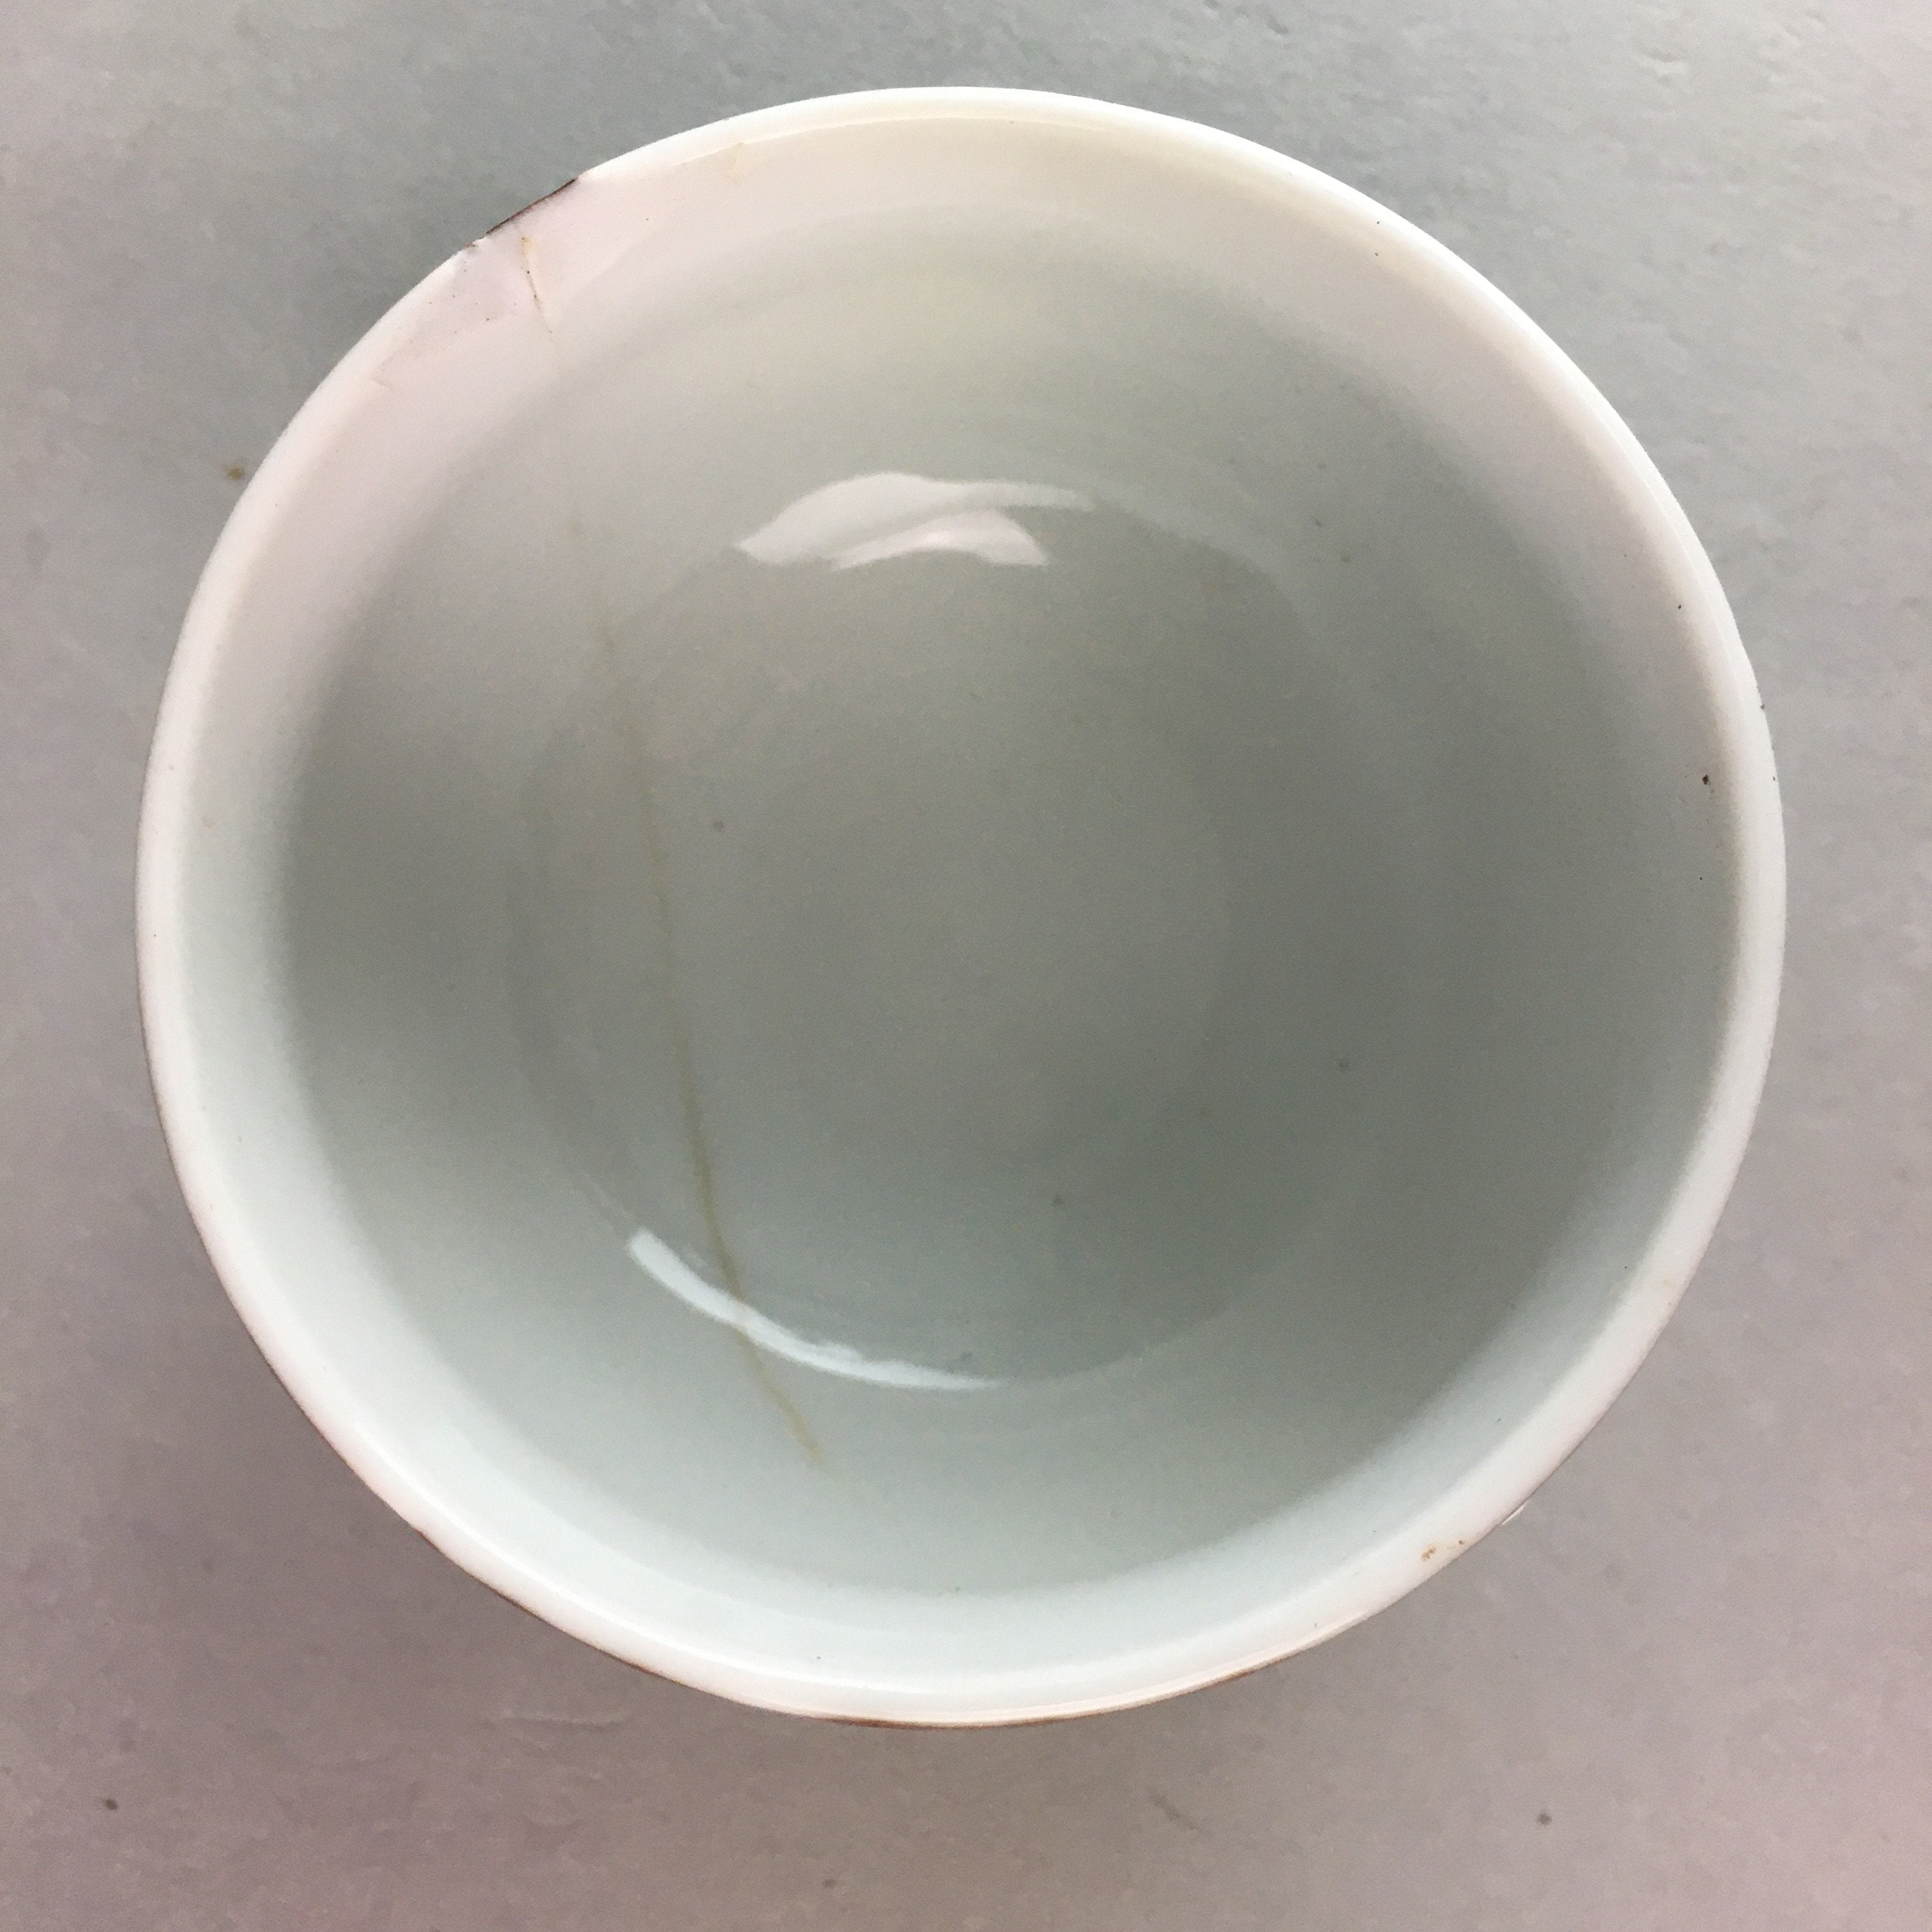 Japanese Porcelain Teacup Yunomi Vtg Sencha Brown Green Leaf Stripe TC152